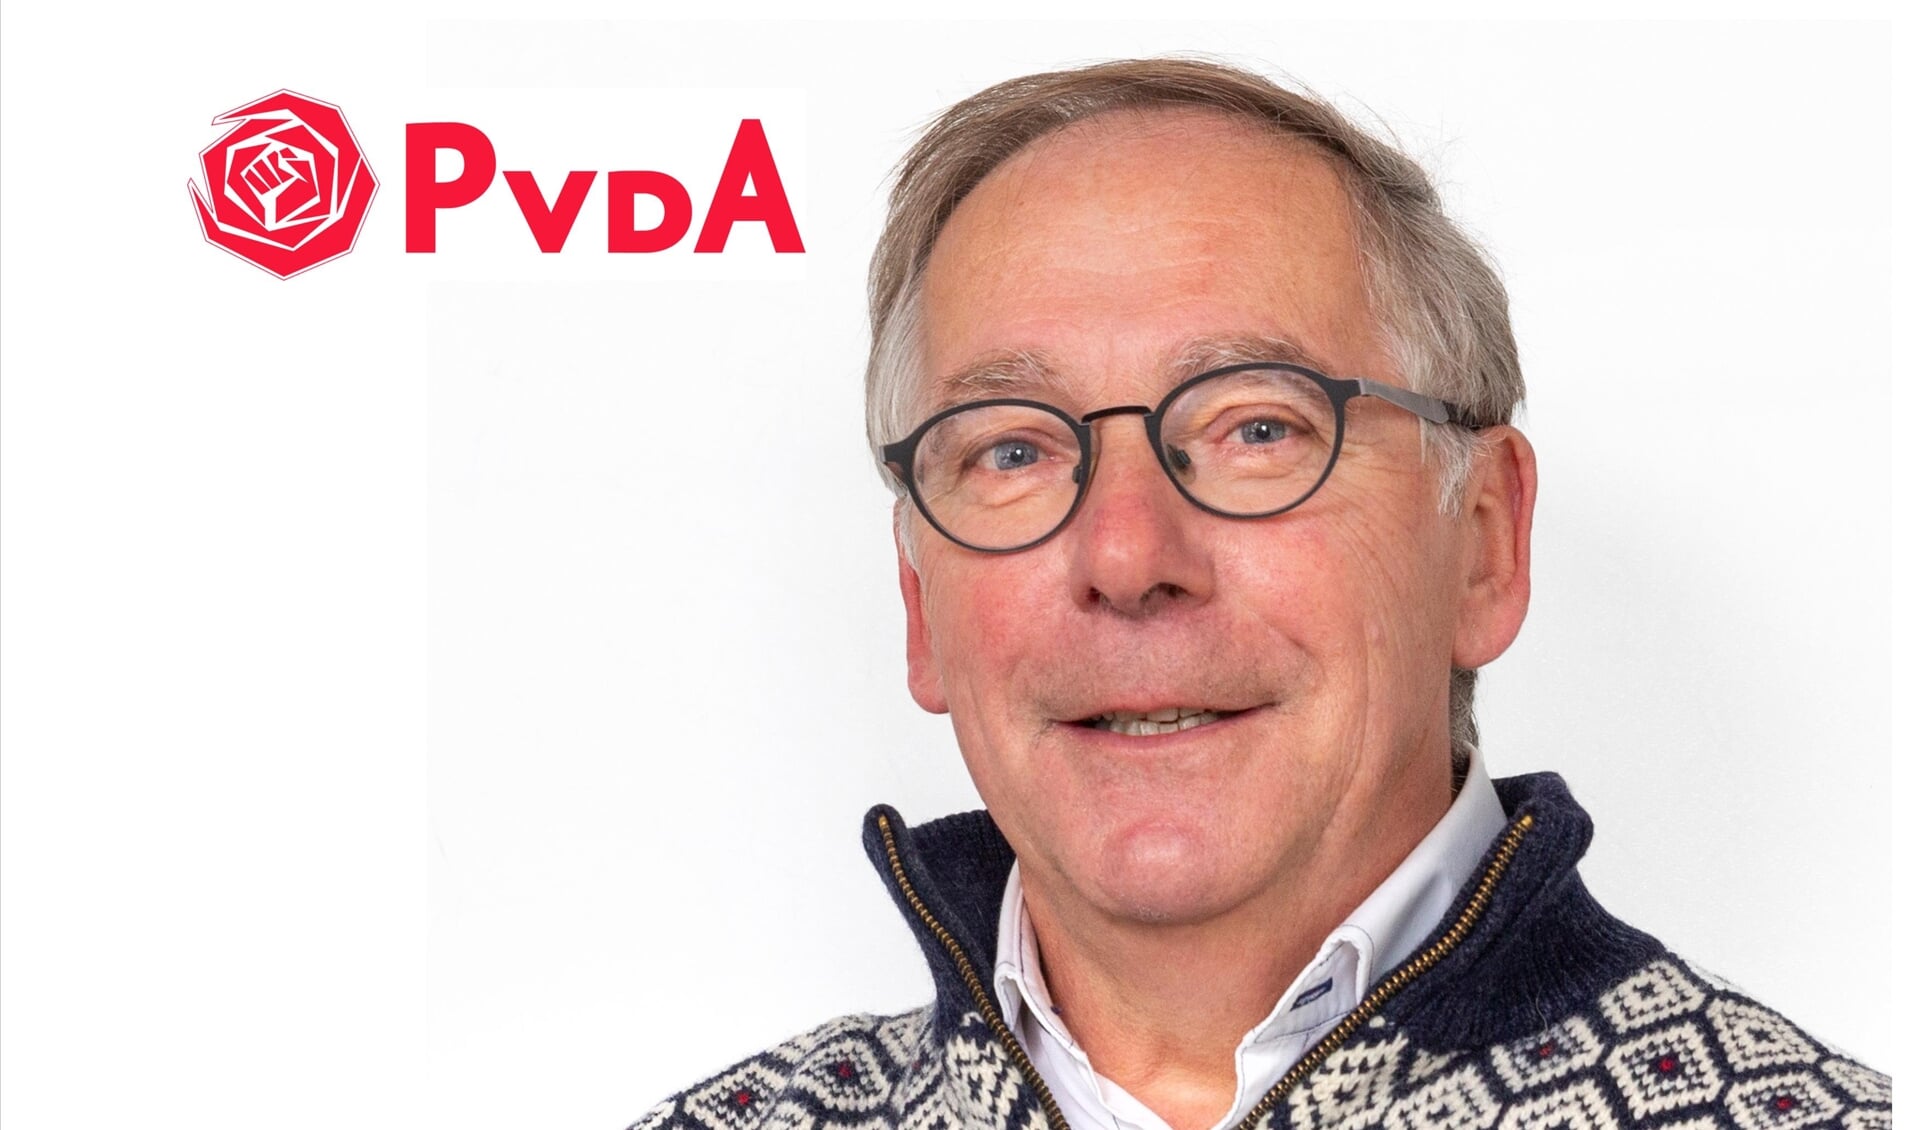 Thema’s als wonen, sociale gelijkheid en duurzaamheid gaan ons allen aan en zijn vanzelfsprekend speerpunten in het verkiezingsprogramma van de PvdA.